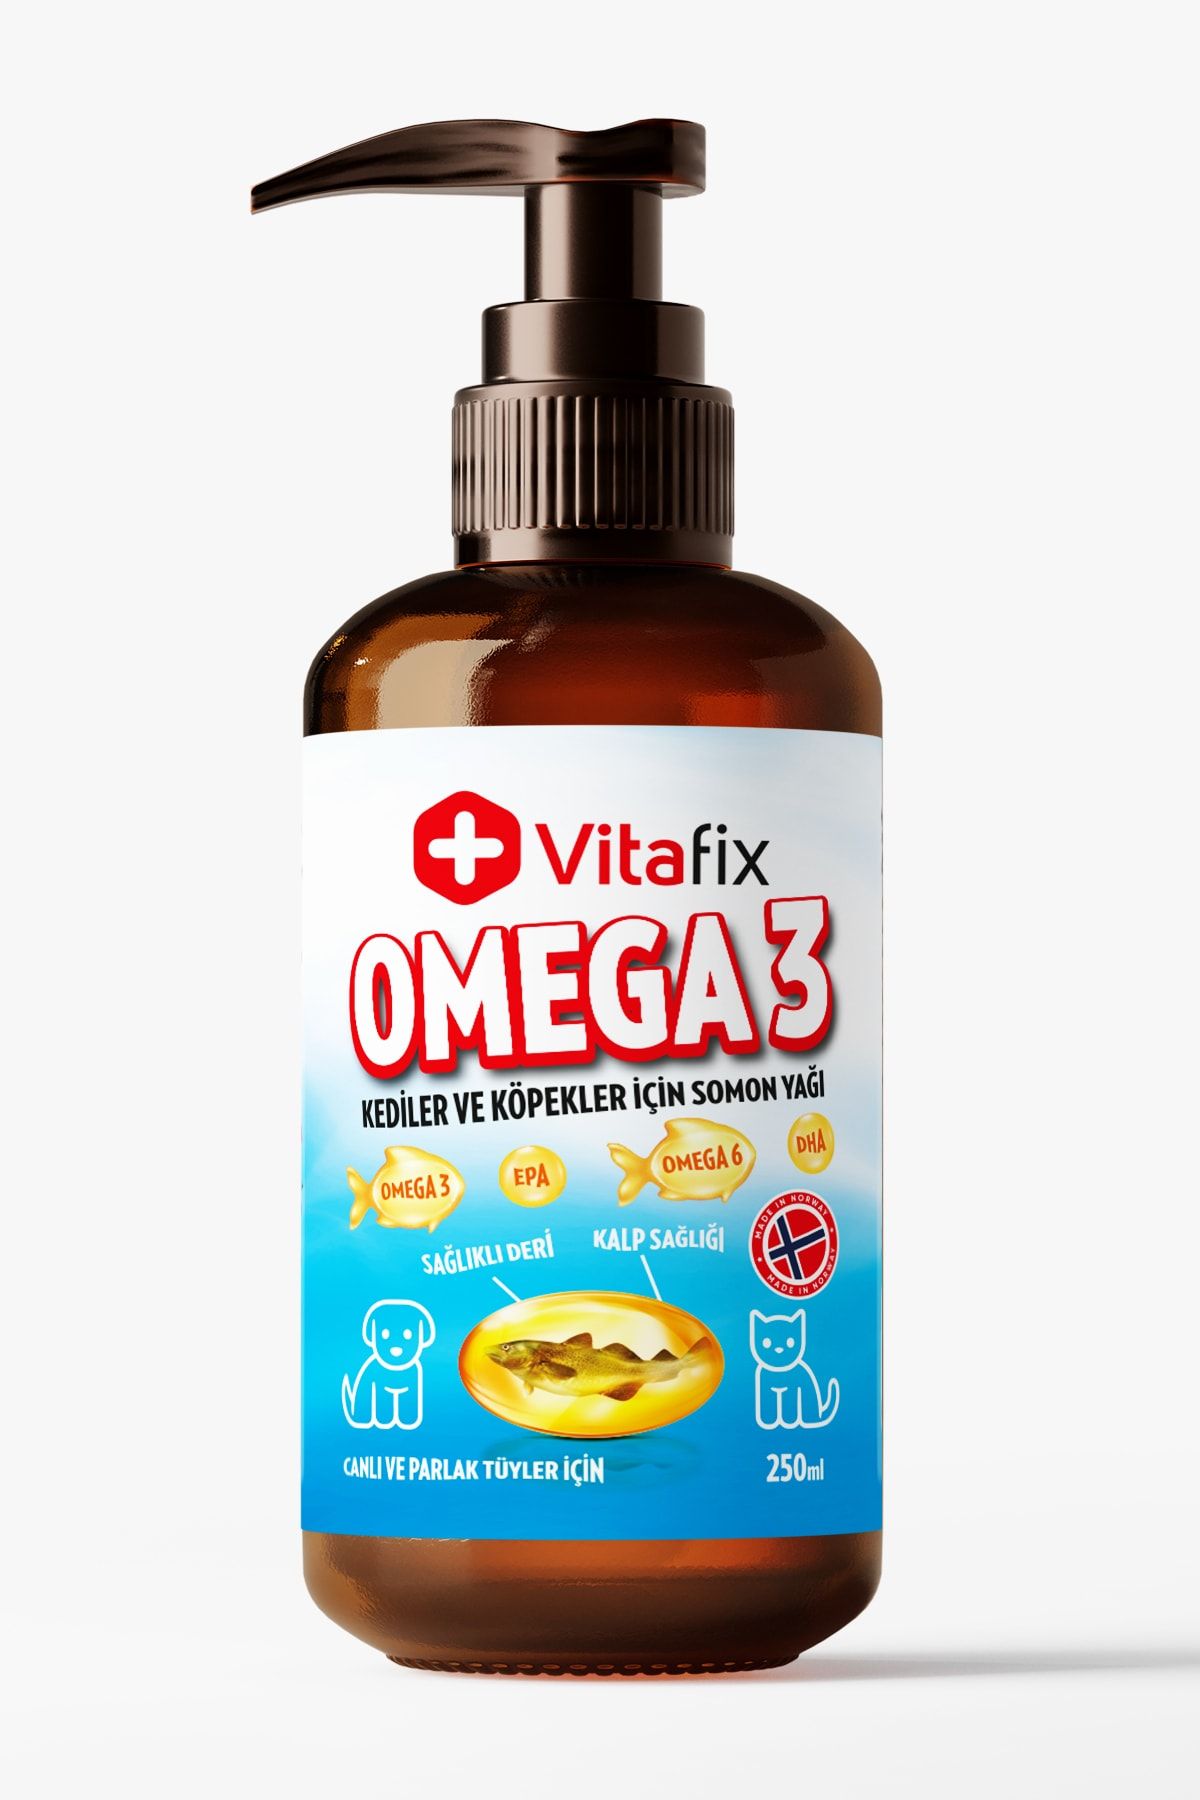 Vitafix Kedi & Köpek Omega Yağı - Epa - Dha - Omega 3 - Salmon Oil - Balık Yağı - Somon Yağı - 250ml